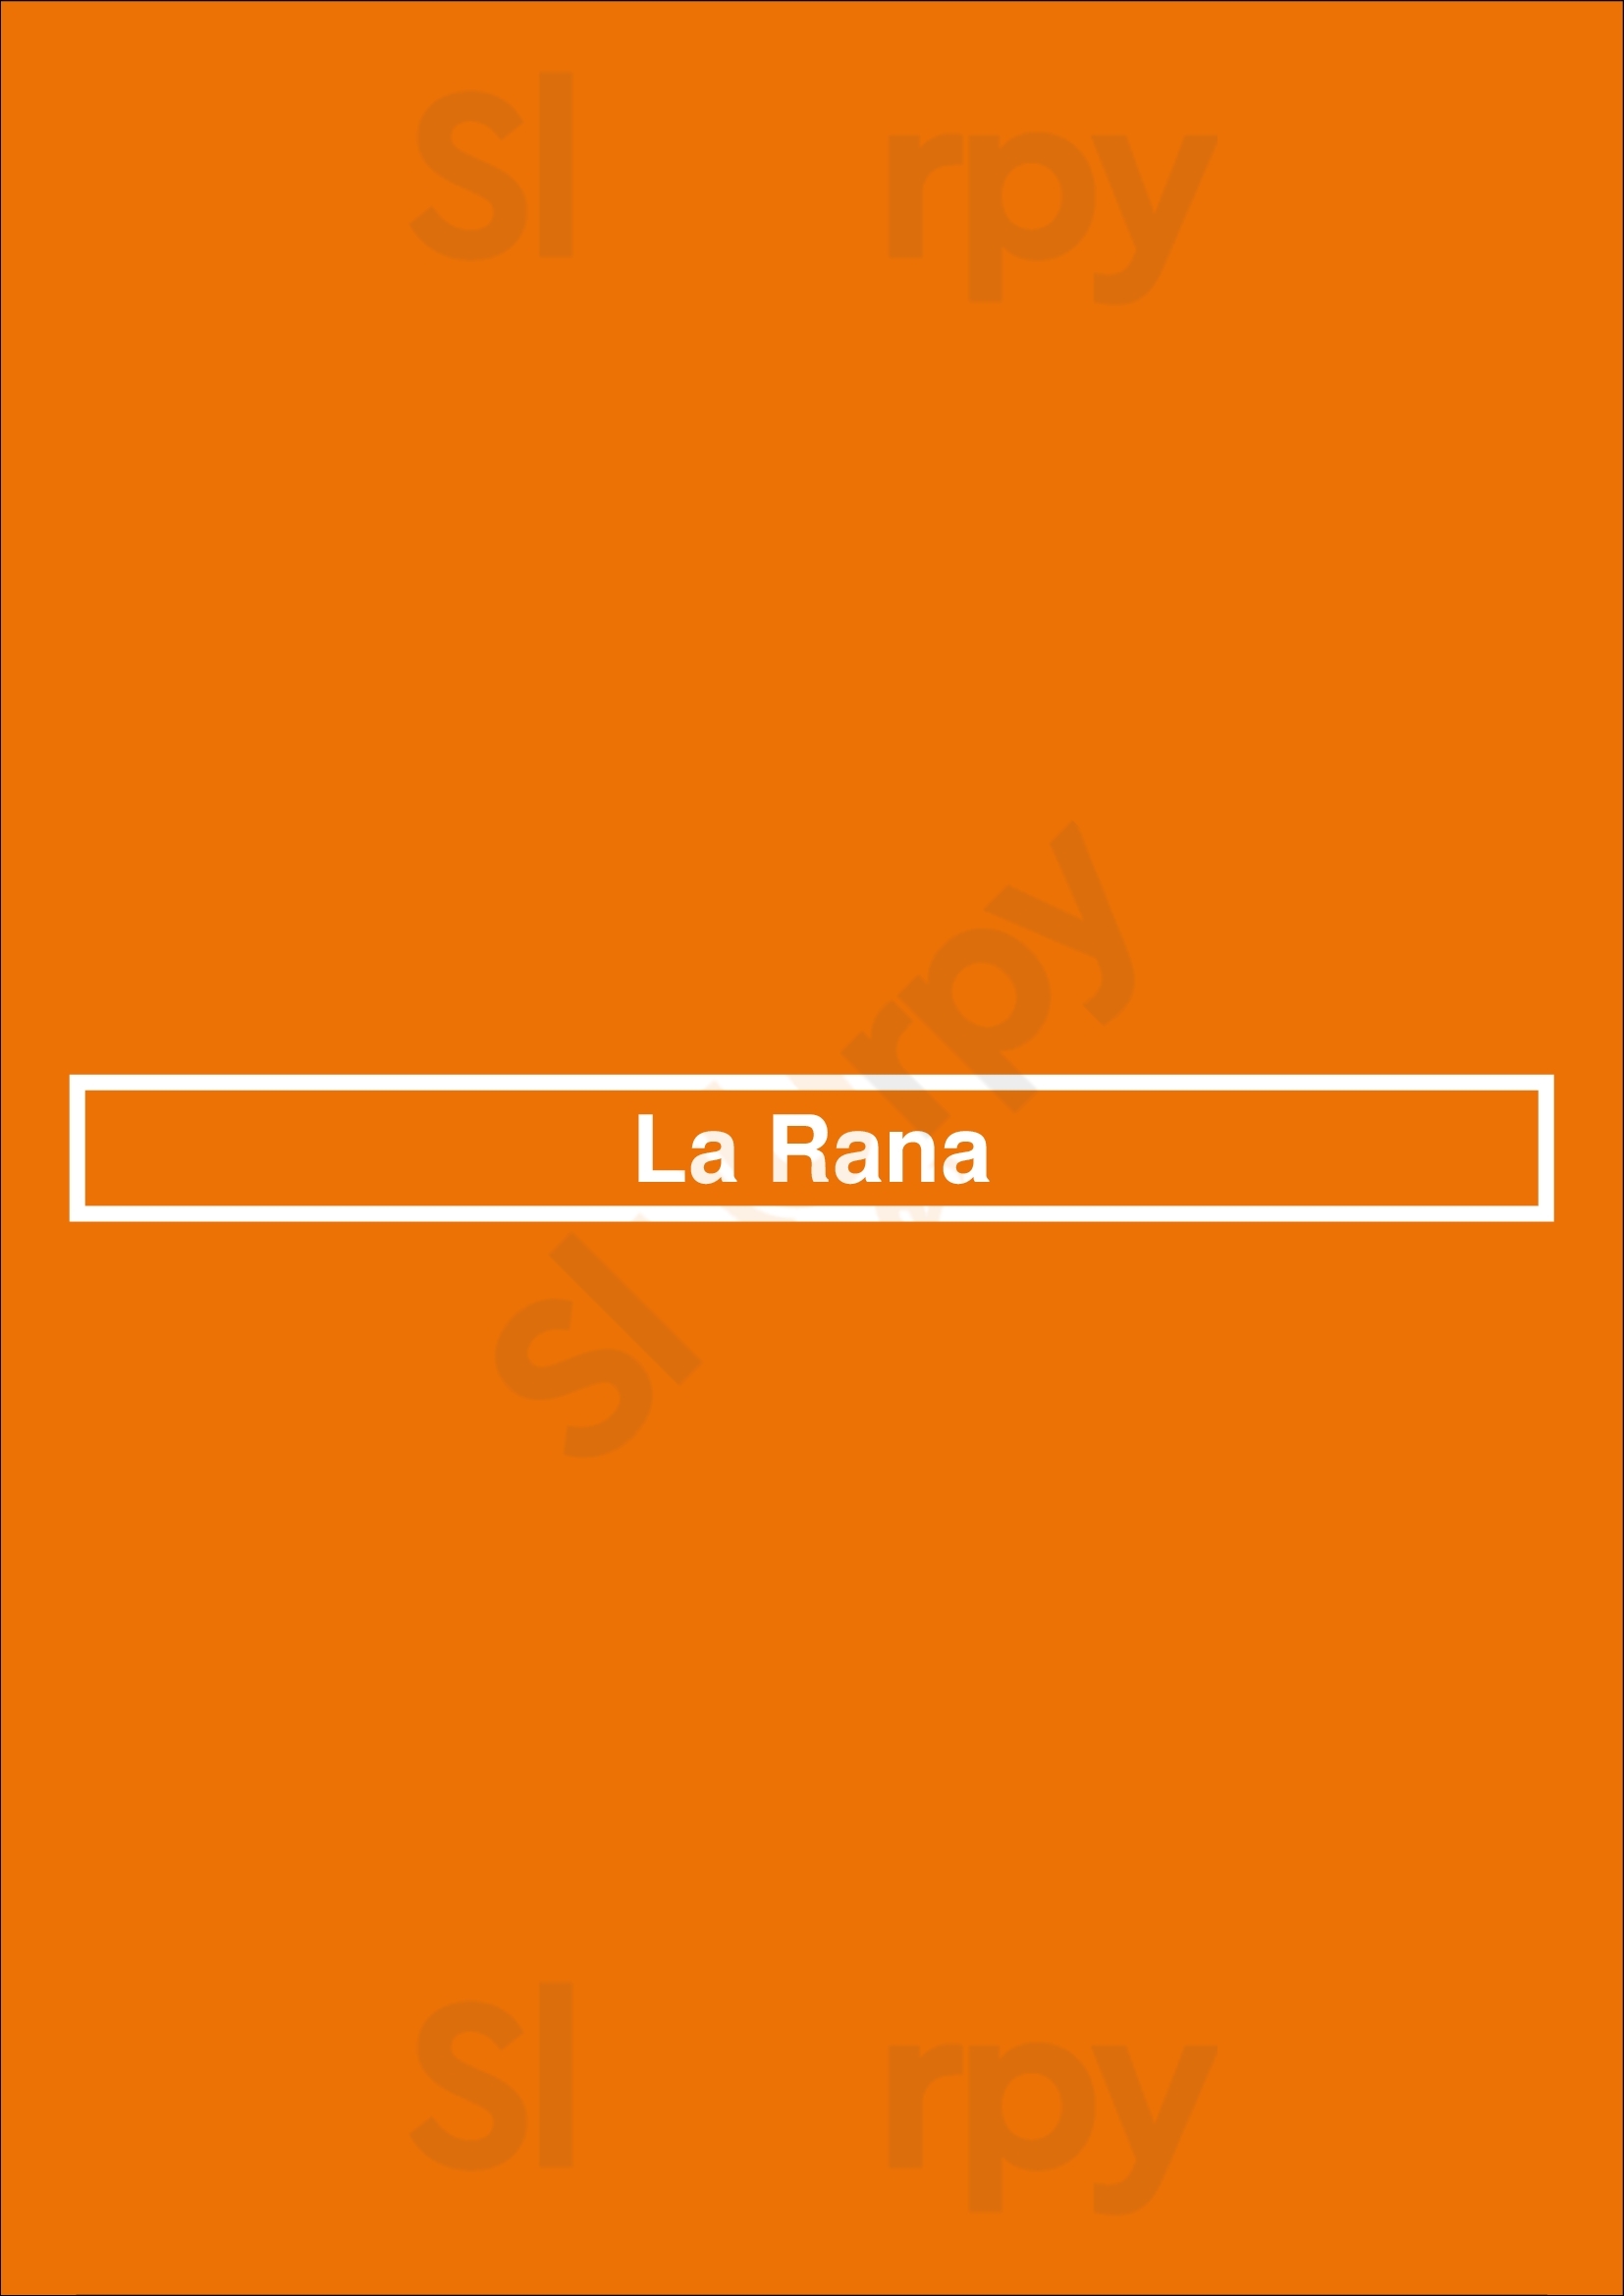 La Rana Benidorm Menu - 1